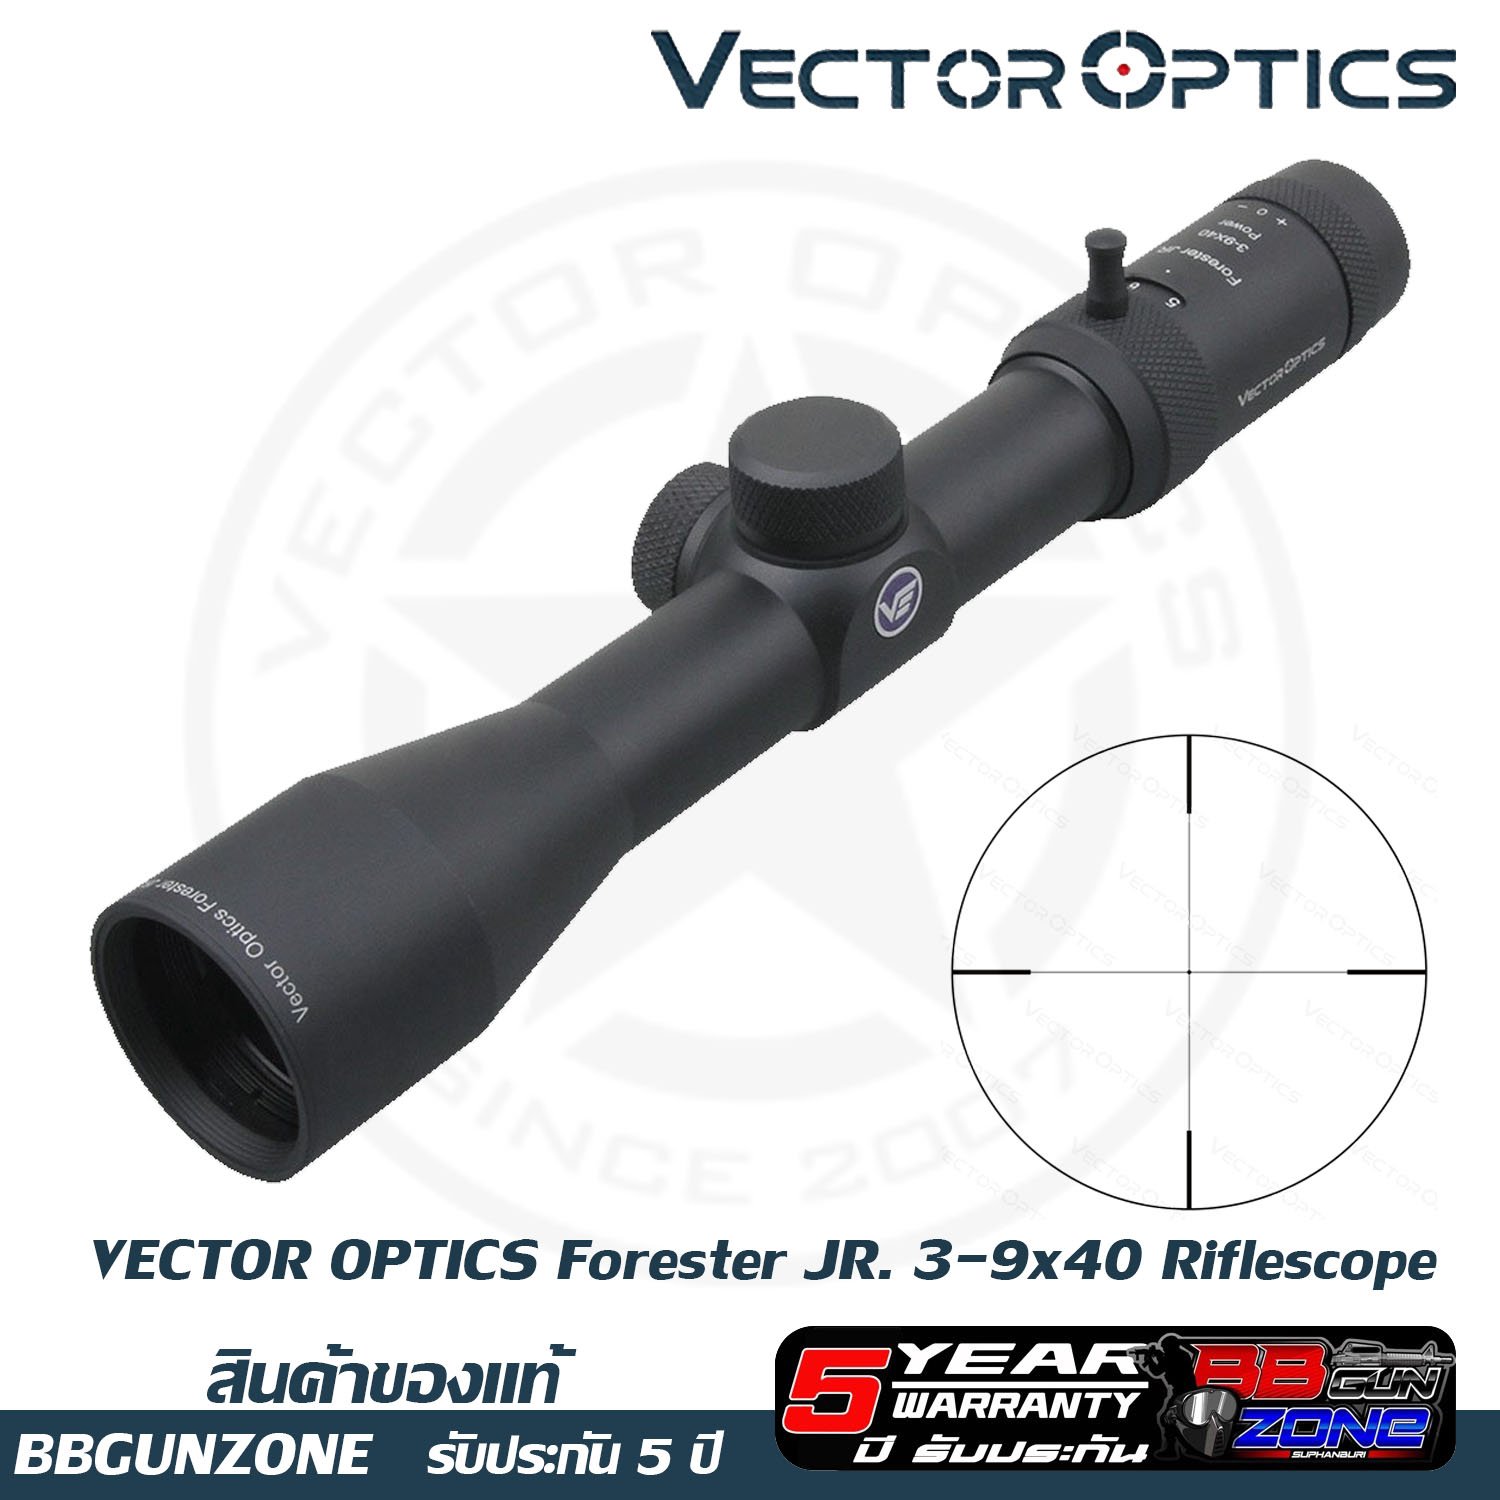 Vector optics Forester JR. 3-9x40 Riflescope